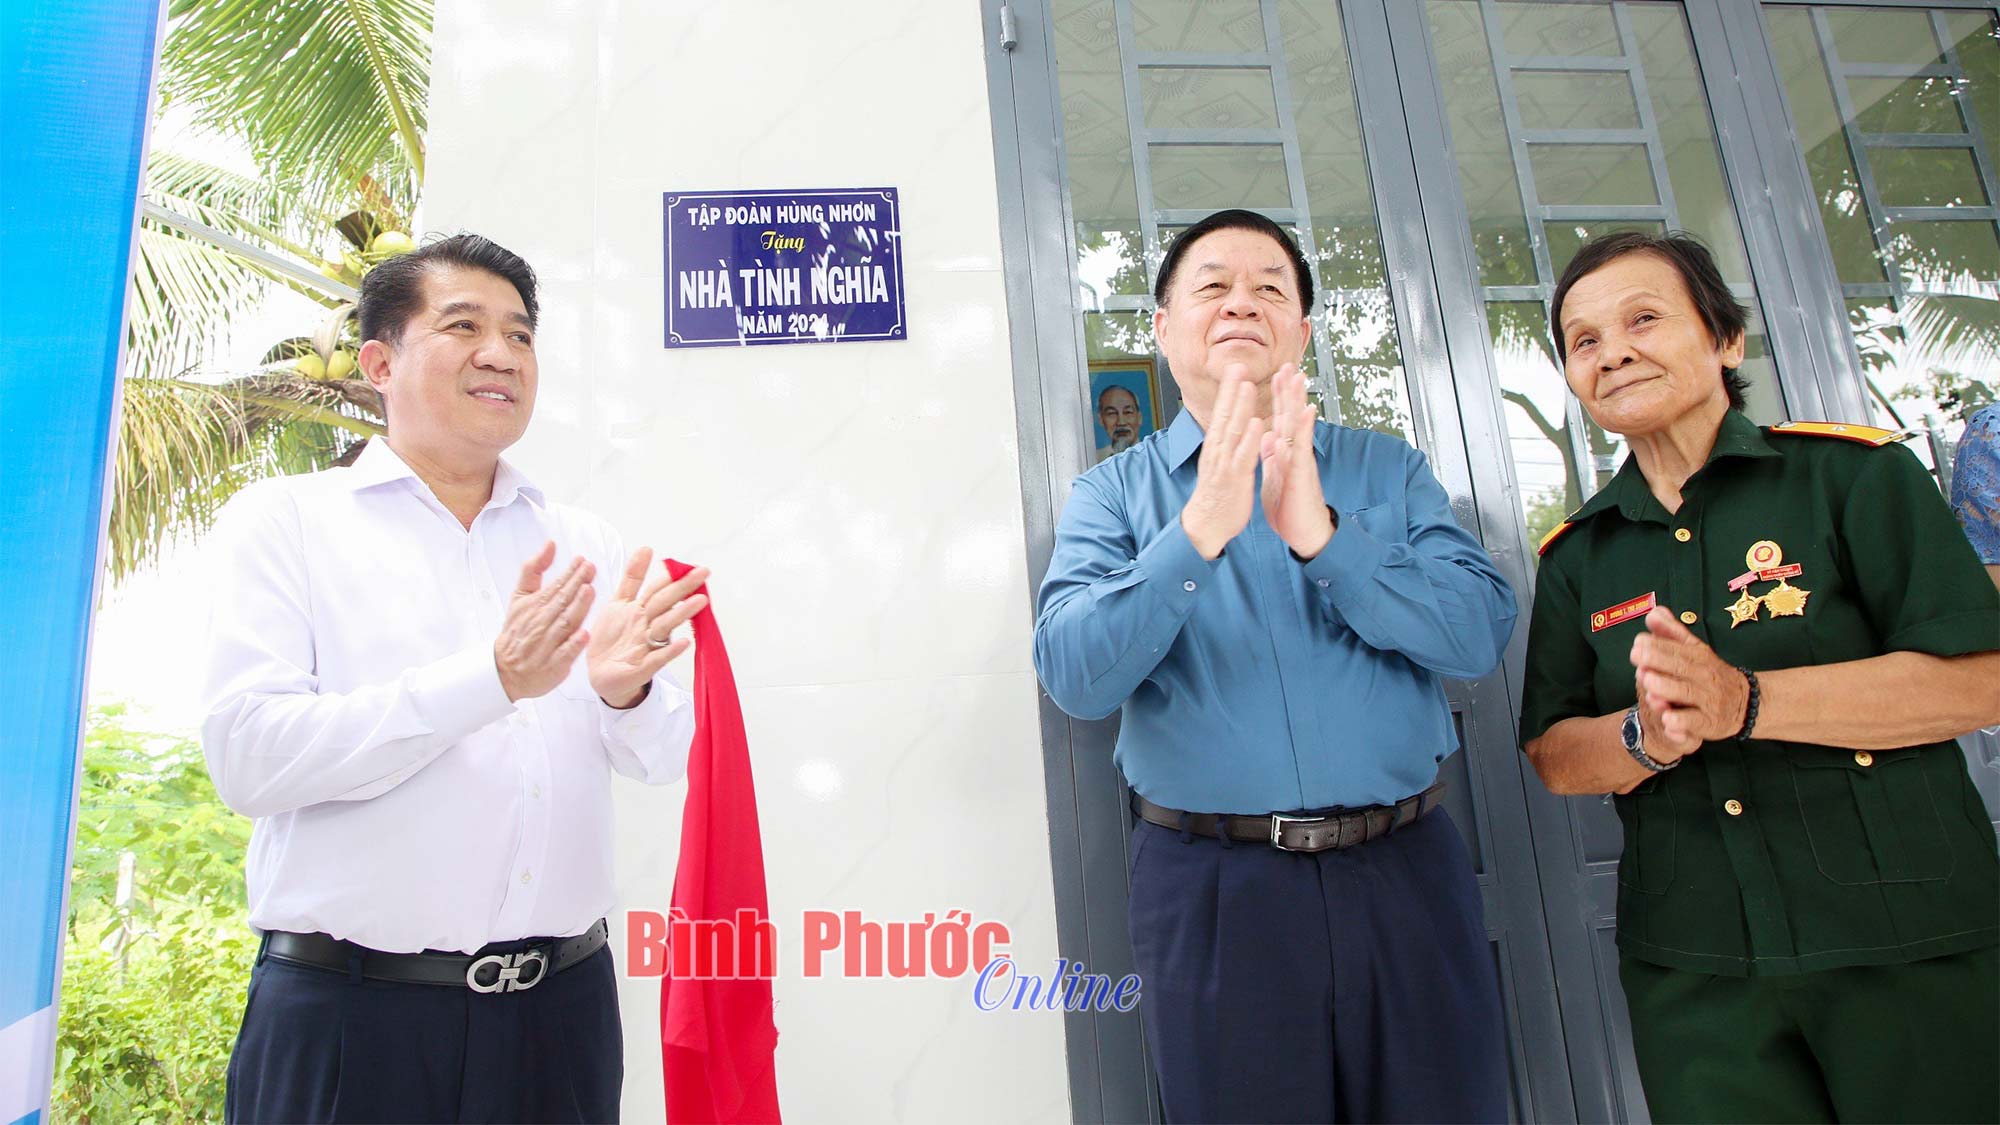 Tập đoàn Hùng Nhơn trao tặng nhà tình nghĩa cho các gia đình chính sách, người có công tỉnh Tây Ninh